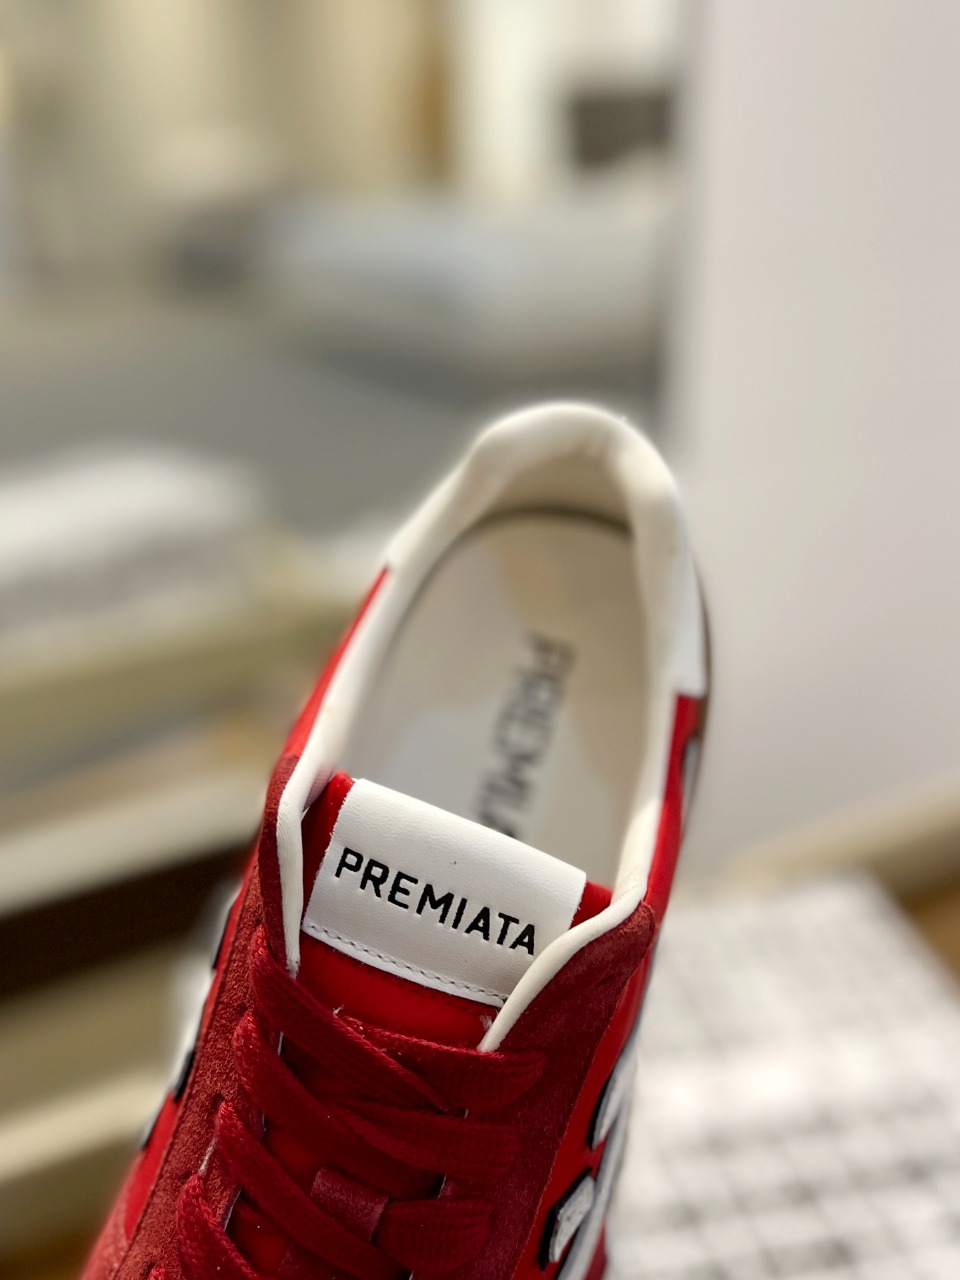 普瑞米亚达PremiataLanderTrainers兰诺系列米字低帮复古百搭休闲训练运动鞋鞋面牛反绒+